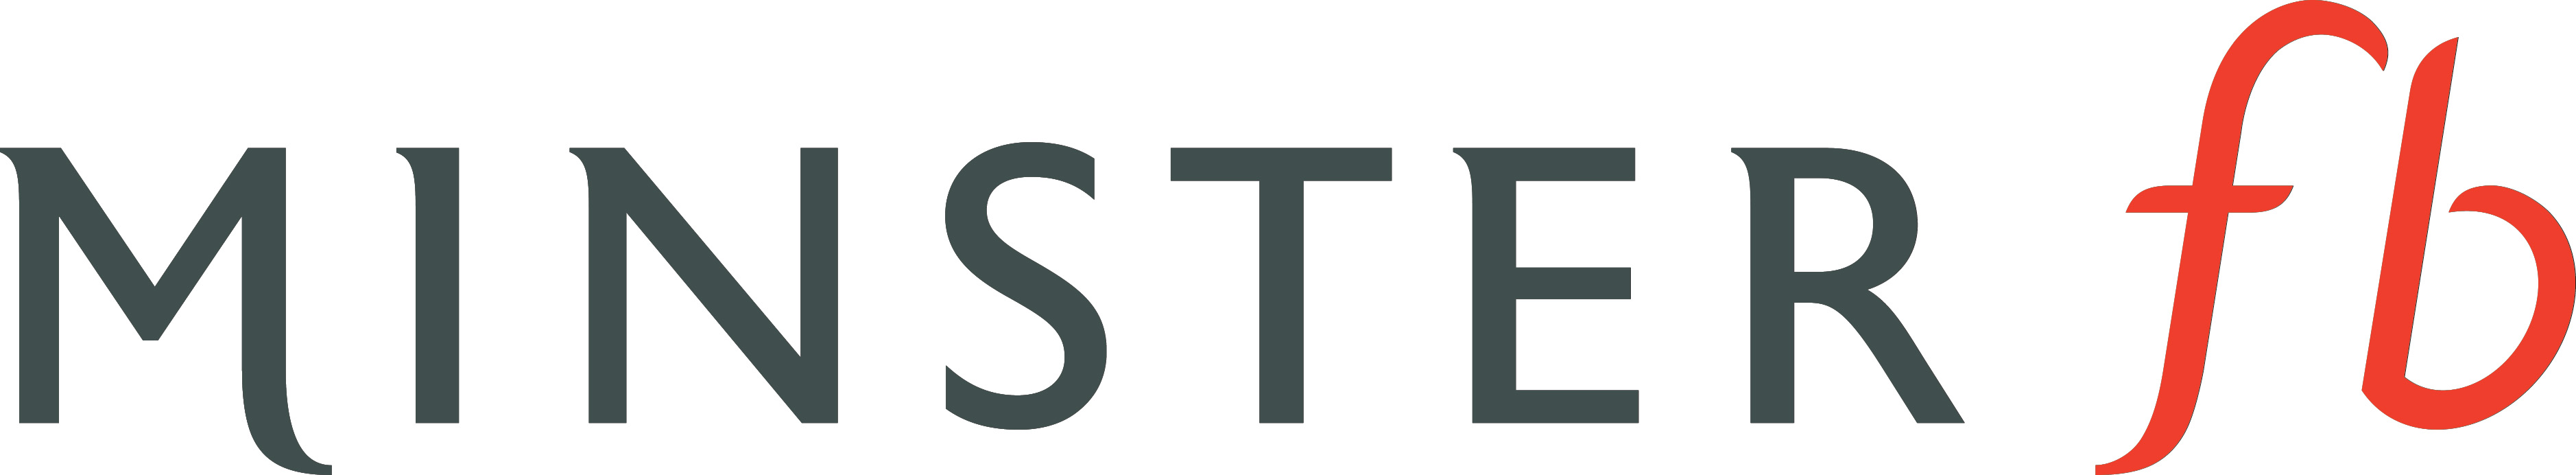 logo for MinsterFB Ltd